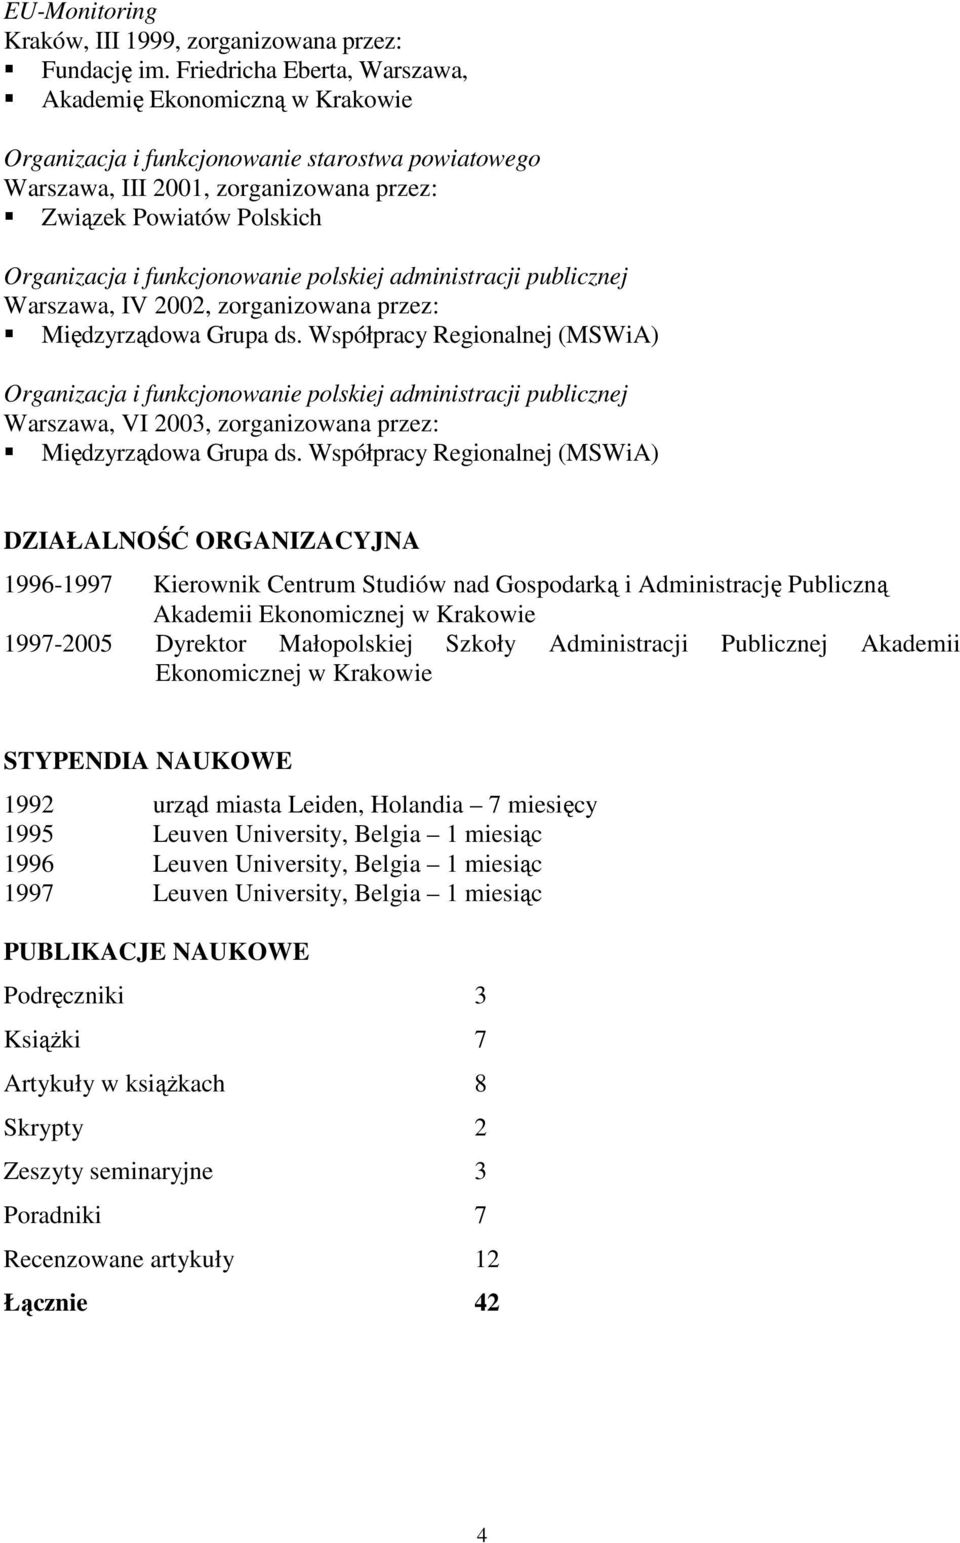 Współpracy Regionalnej (MSWiA) Organizacja i funkcjonowanie polskiej administracji publicznej Warszawa, VI 2003, zorganizowana przez: Międzyrządowa Grupa ds.